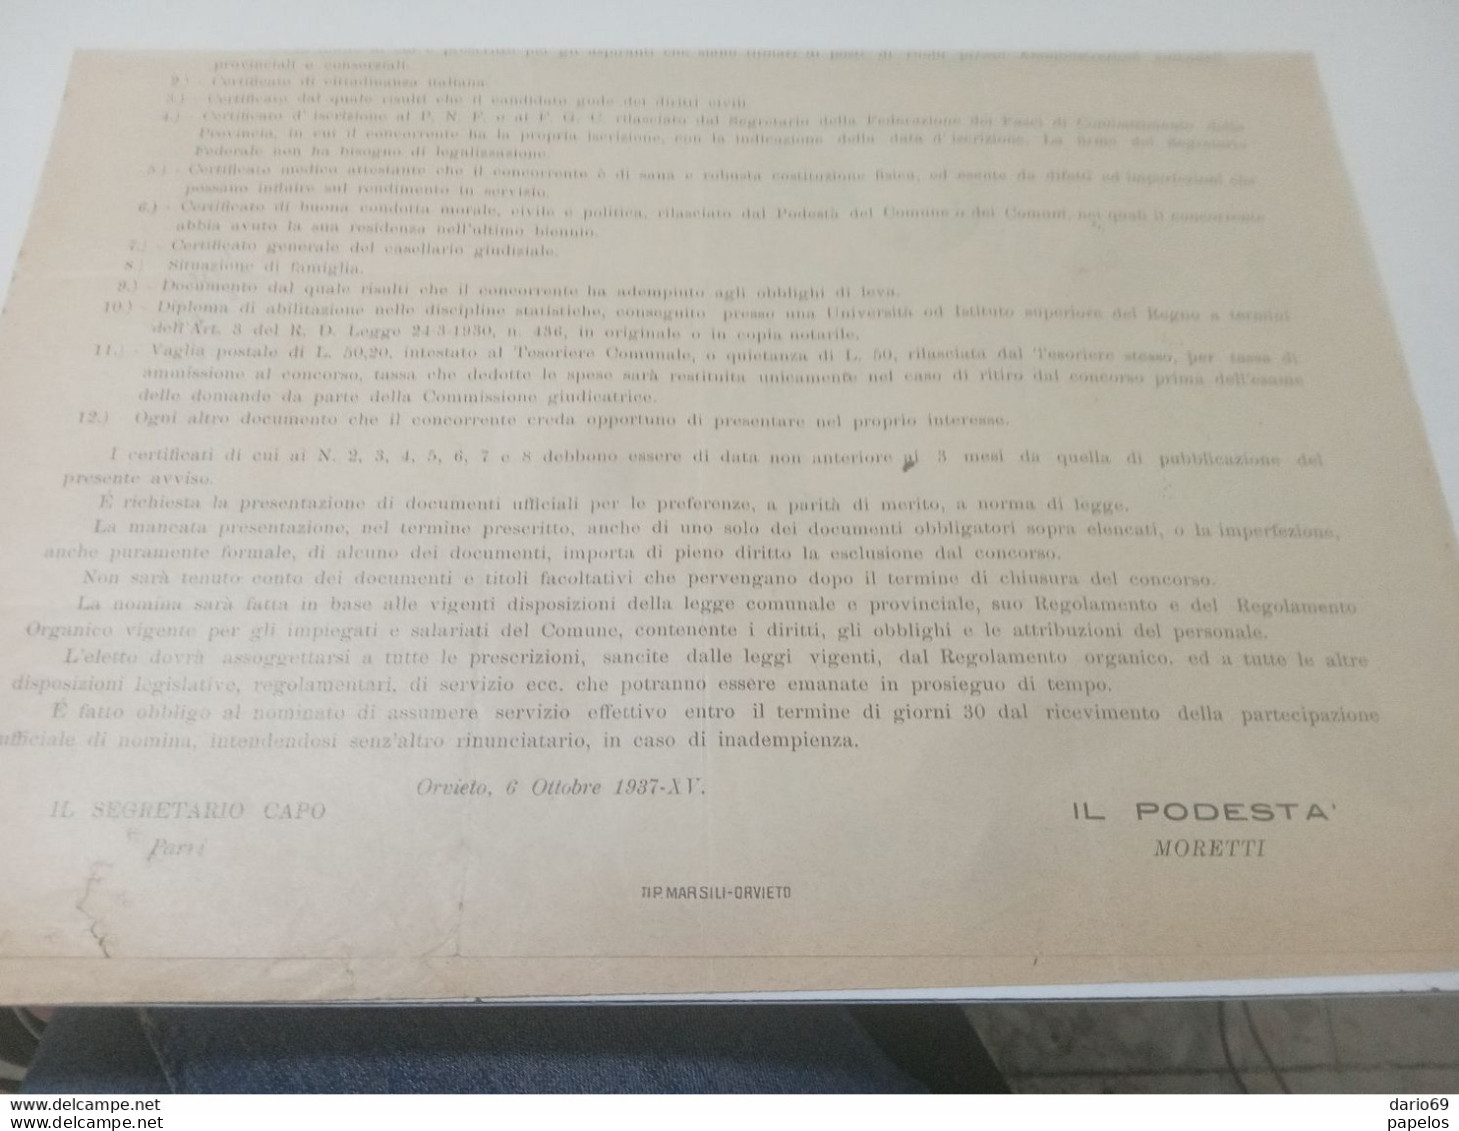 1937 COMUNE DI  ORVIETO CONCORSO PER IL POSTO DI CAPO UFFICIO DI STATISTICA - Documents Historiques